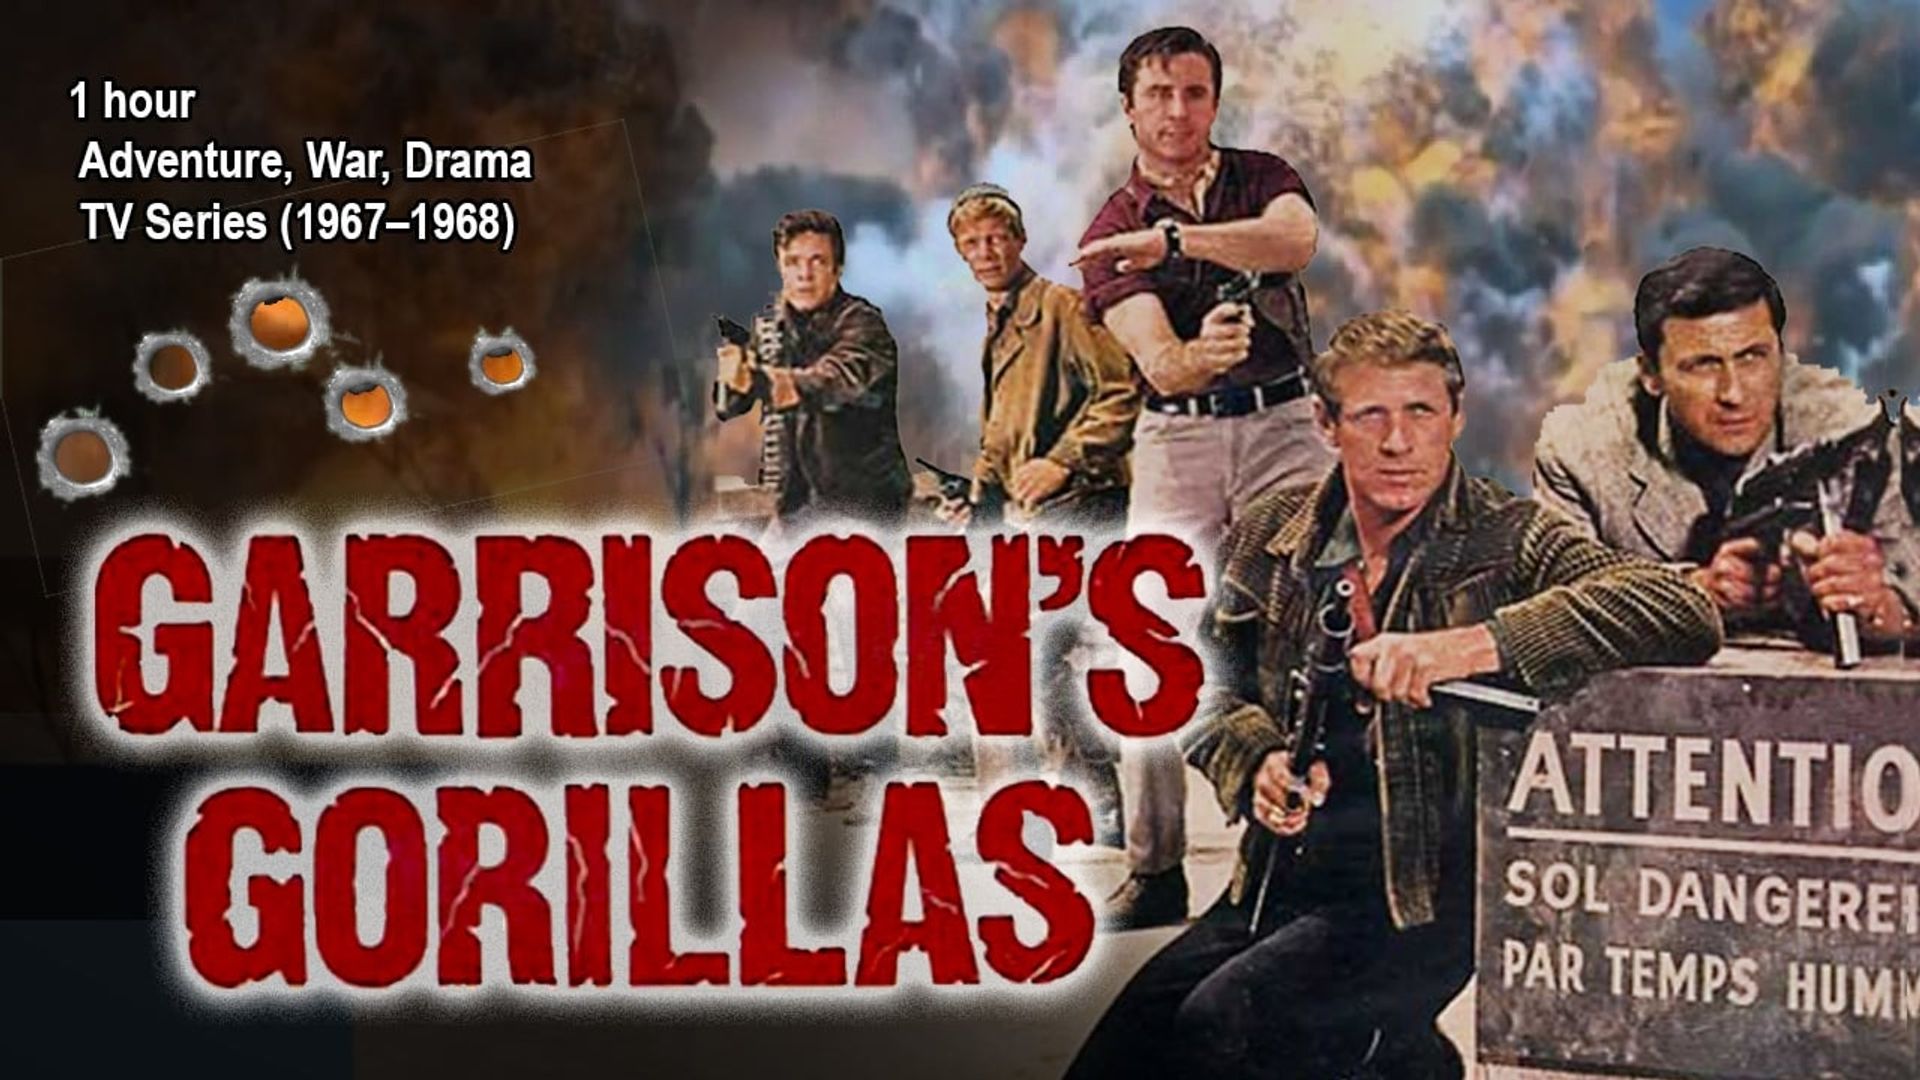 Garrison's Gorillas background